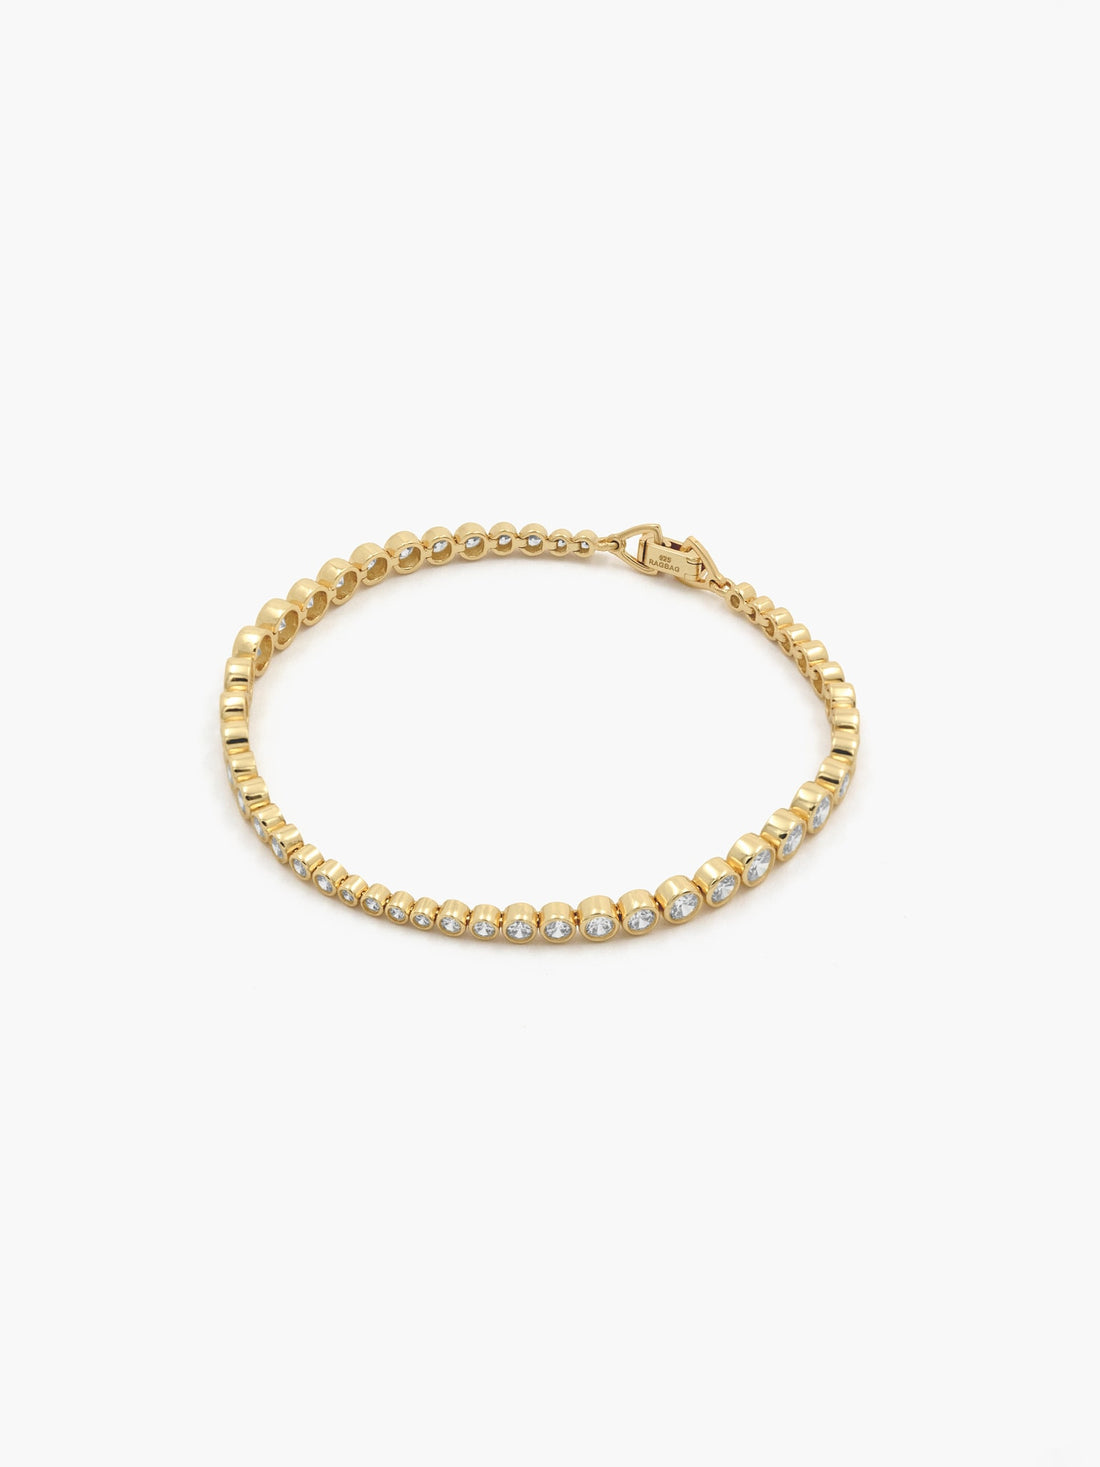 Mini Tennis Bracelet | Stainless Steel Jewelry | MIAJWL – Mia Bijoux